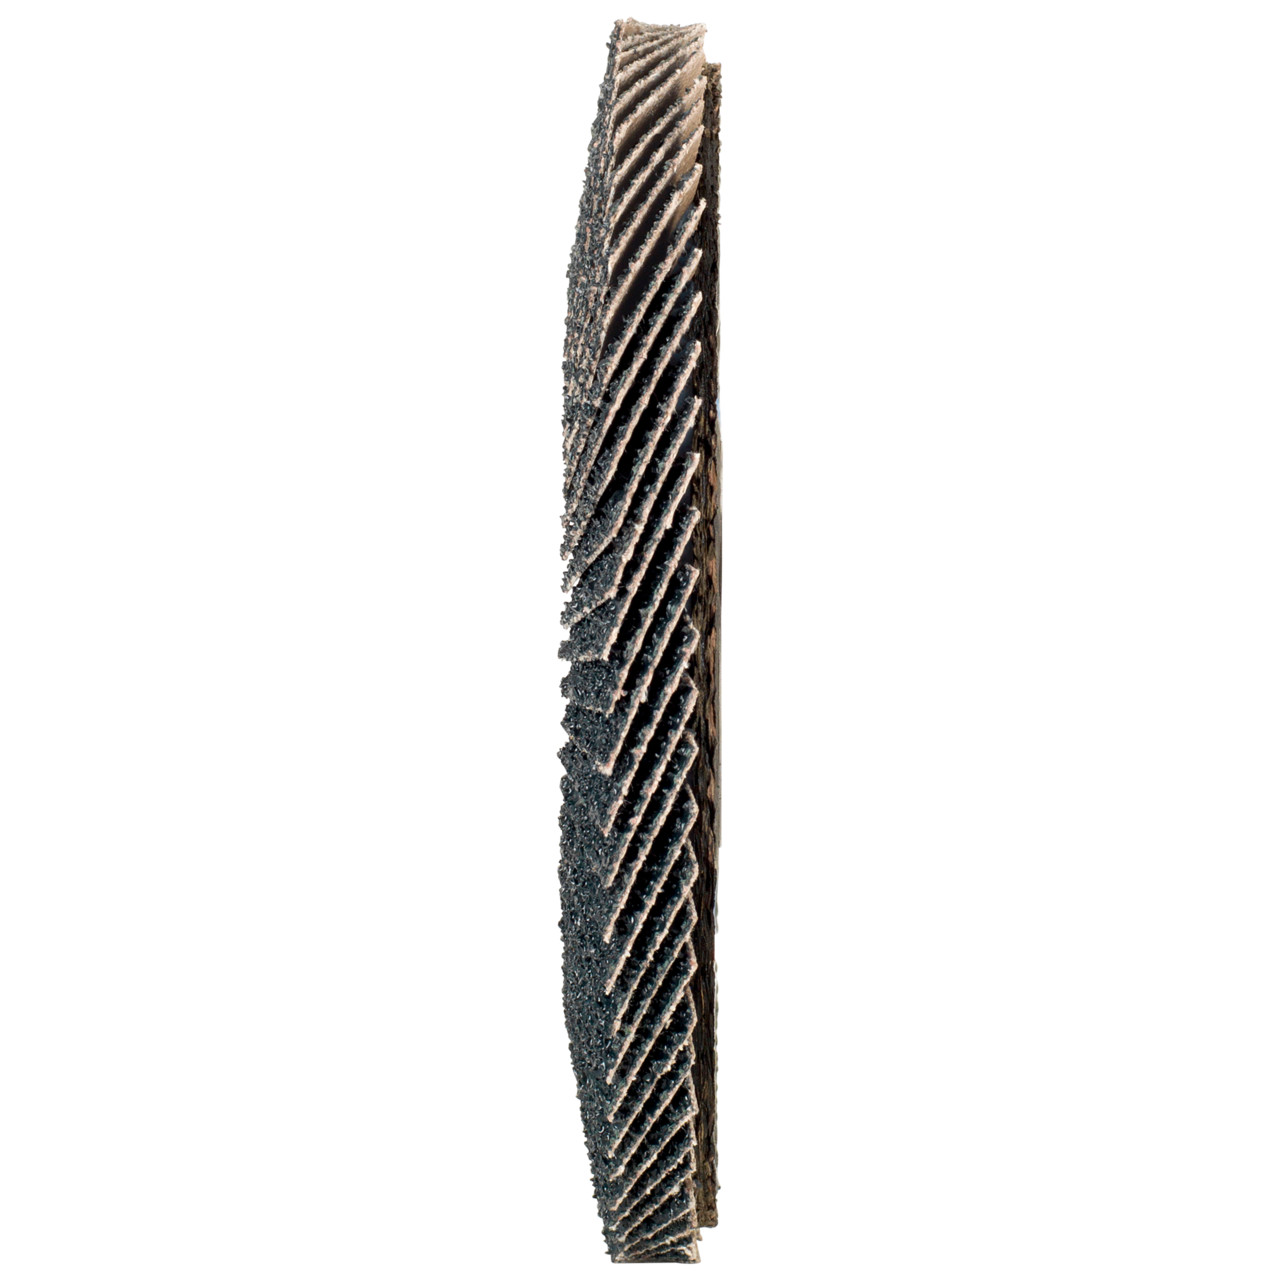 Tyrolit Gekartelde borgring DxH 115x22,2 2in1 voor staal &amp; roestvrij staal, P40, vorm: 27A - offset uitvoering (glasvezeldrager body versie), Art. 668642